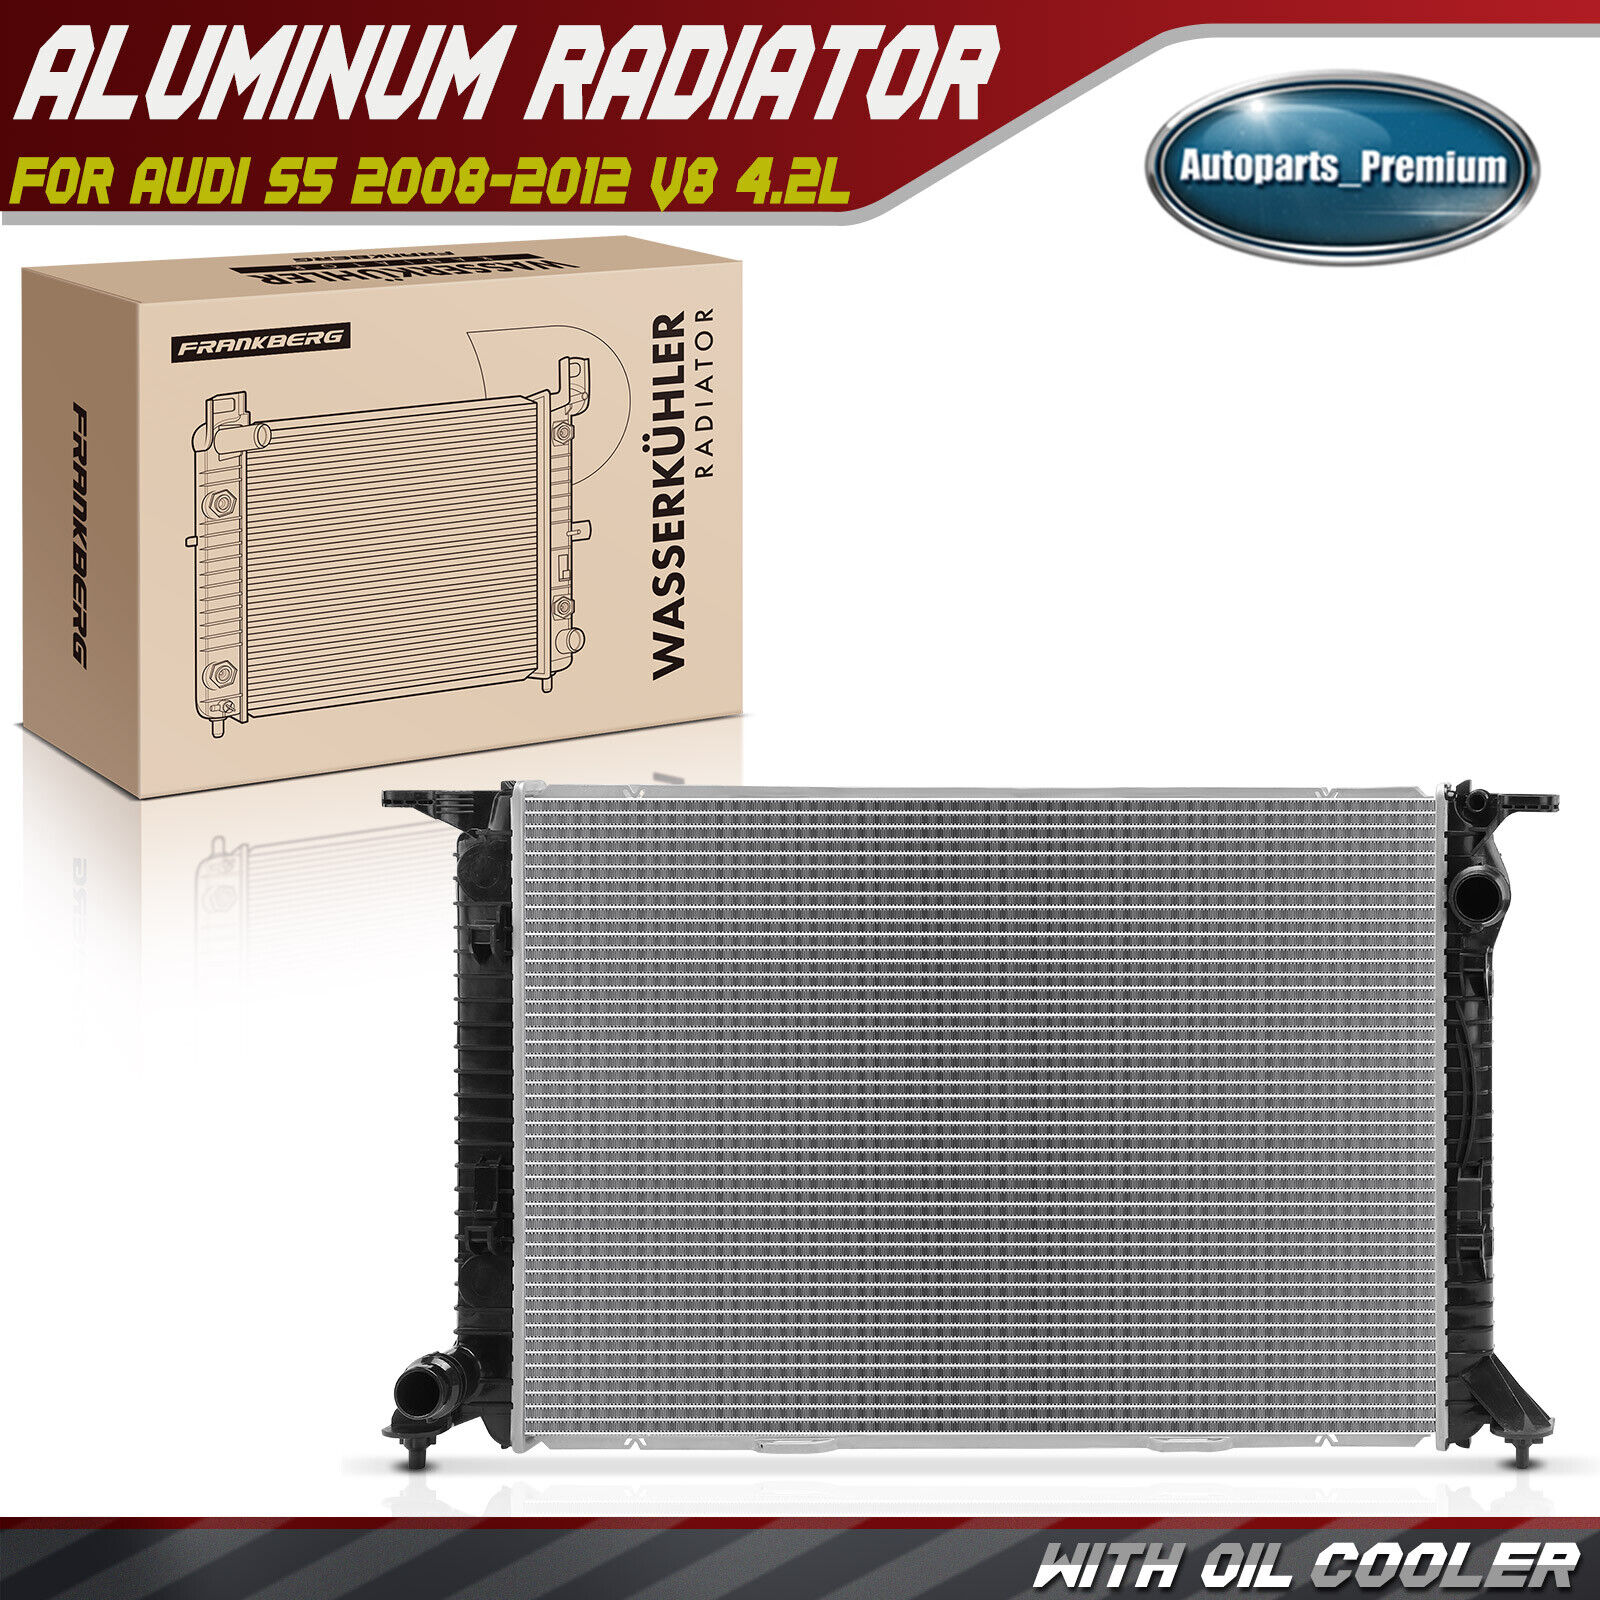 Radiator without Oil Cooler for Audi S5 2008-2012 V8 4.2L Manual Transmission